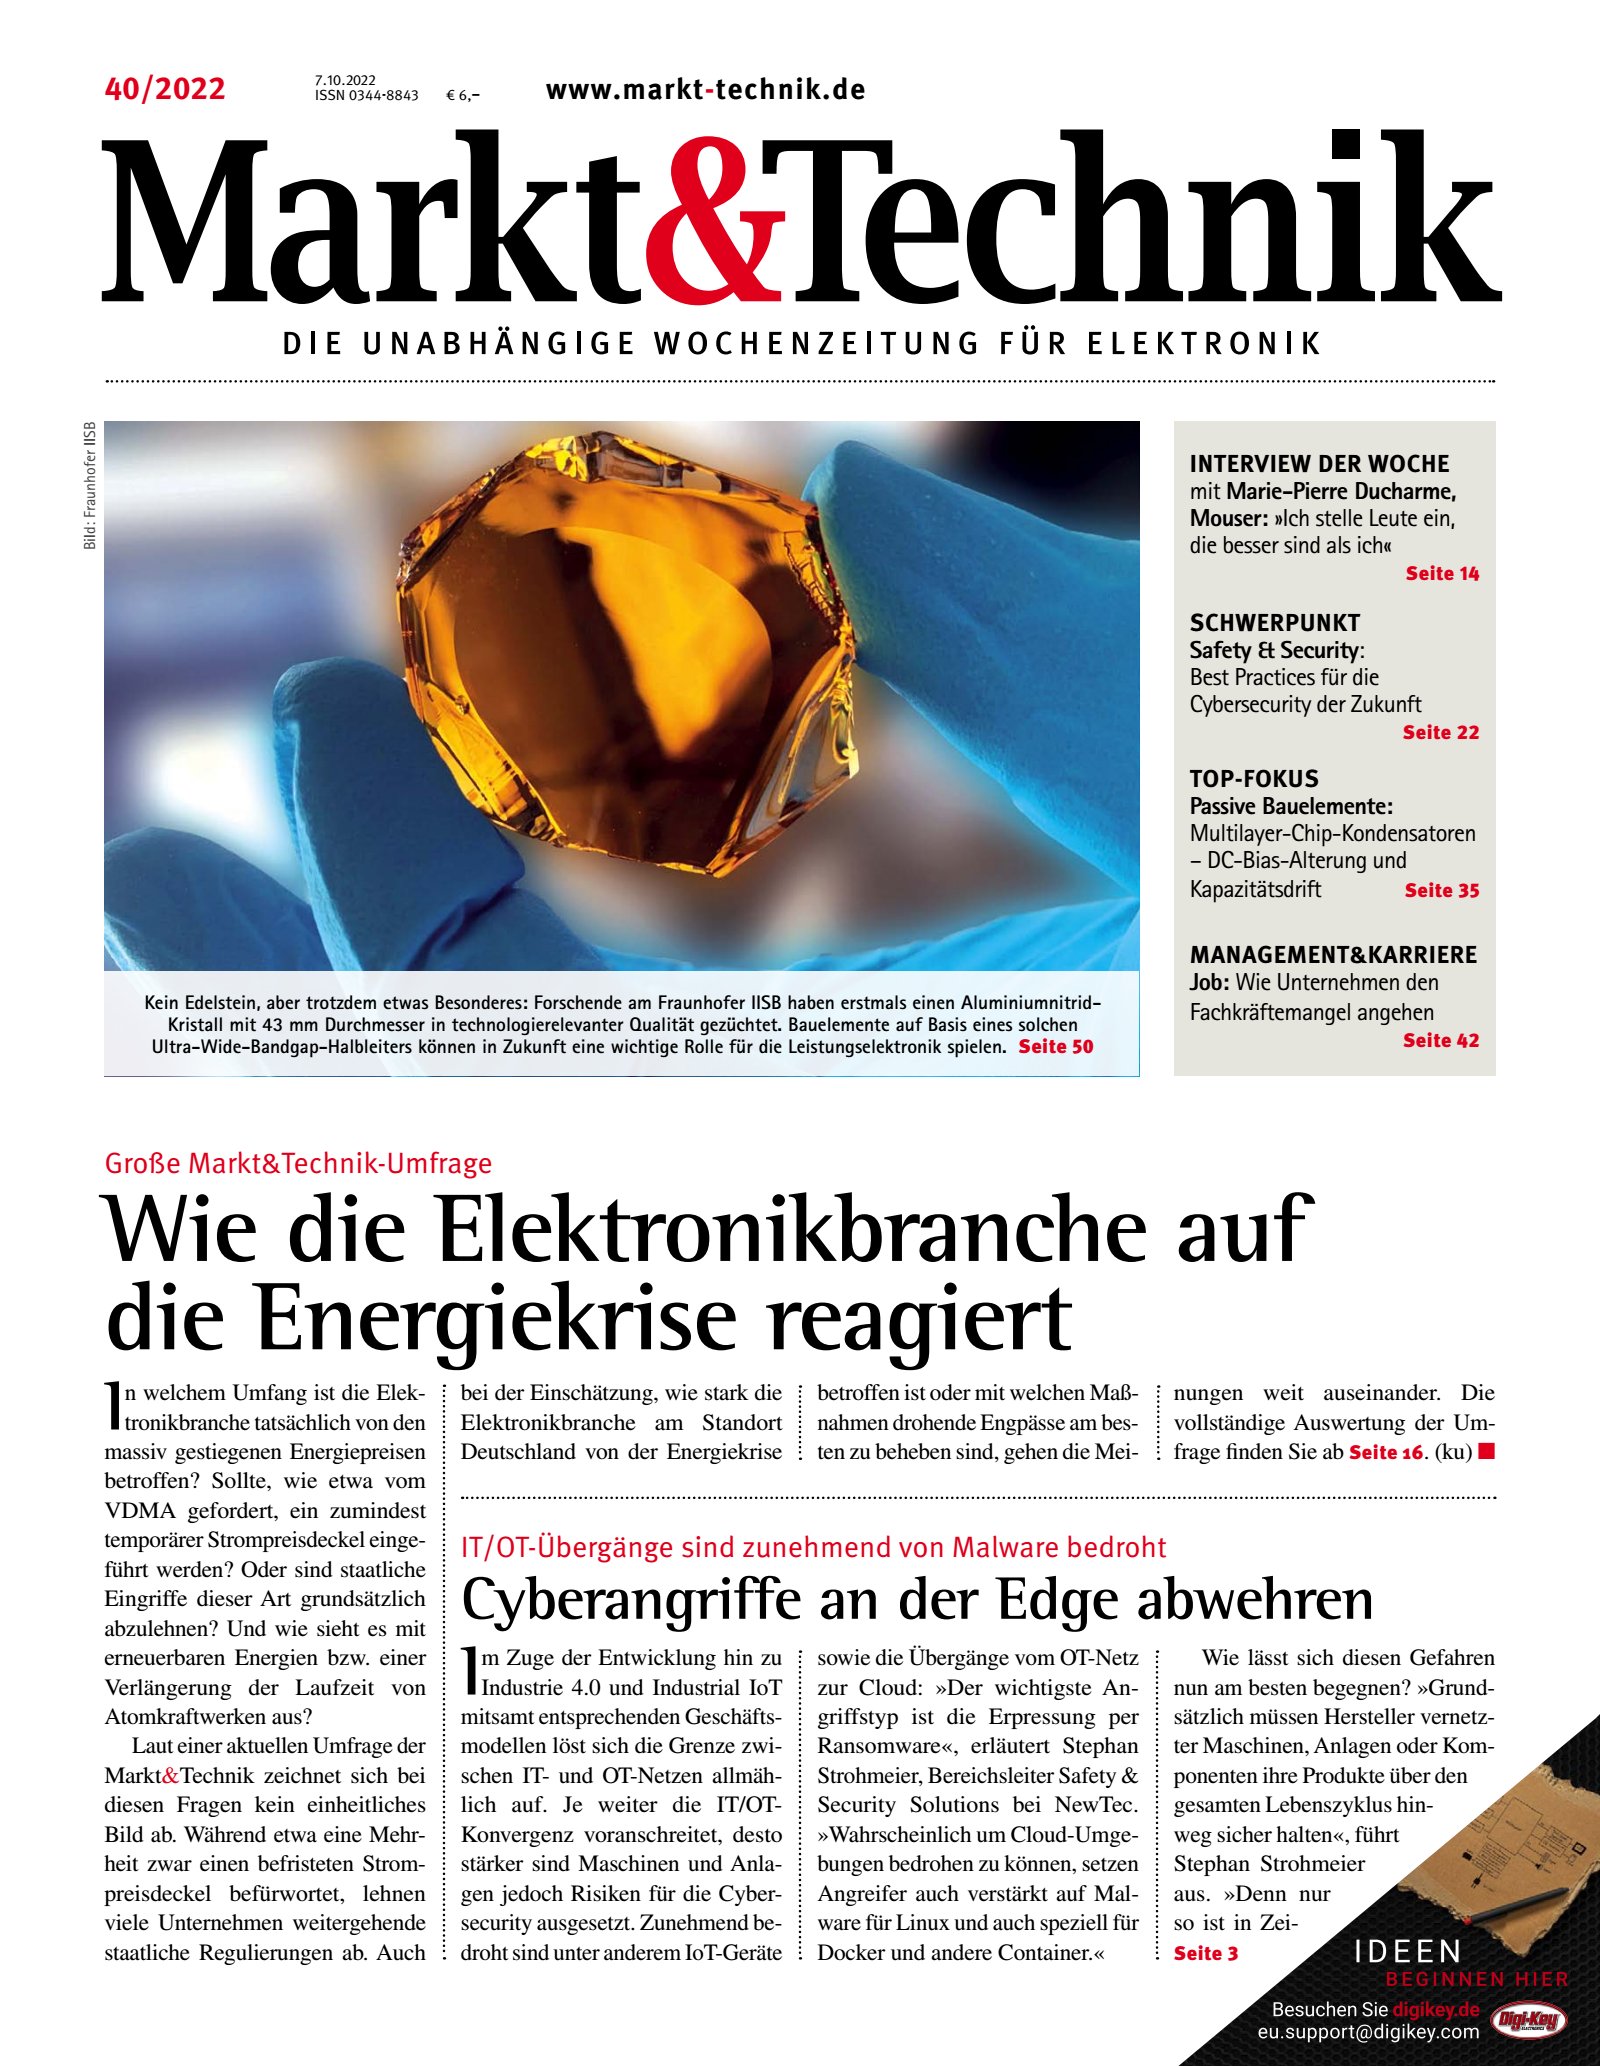 Markt&Technik 40/2022 Digital